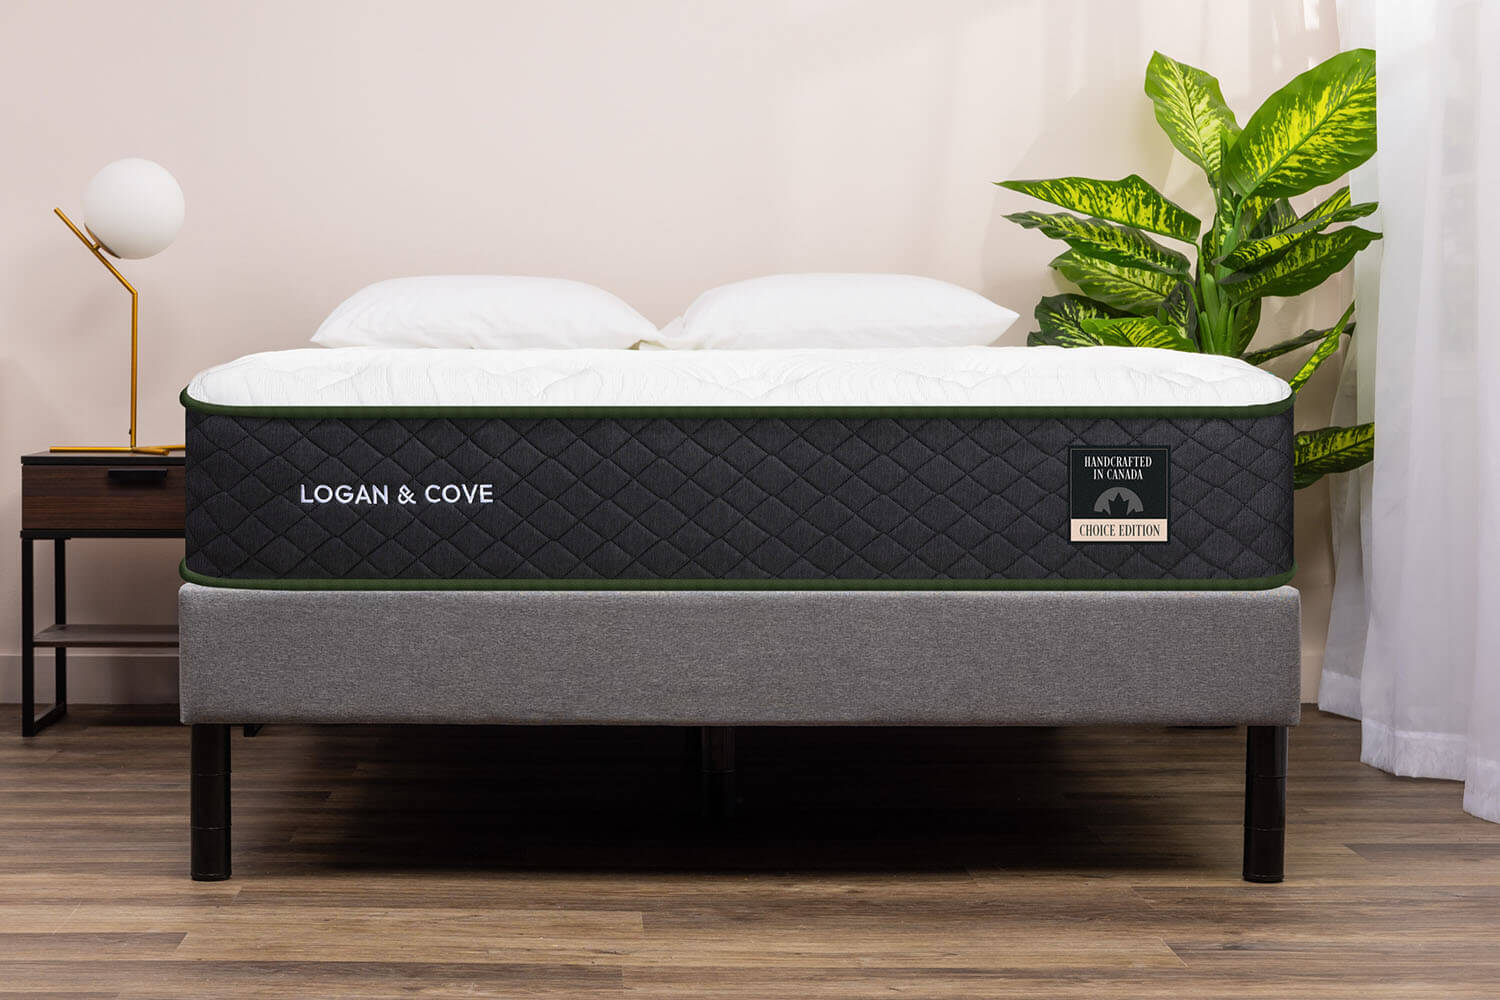 Logan & Cove mattress on a Platform Bed